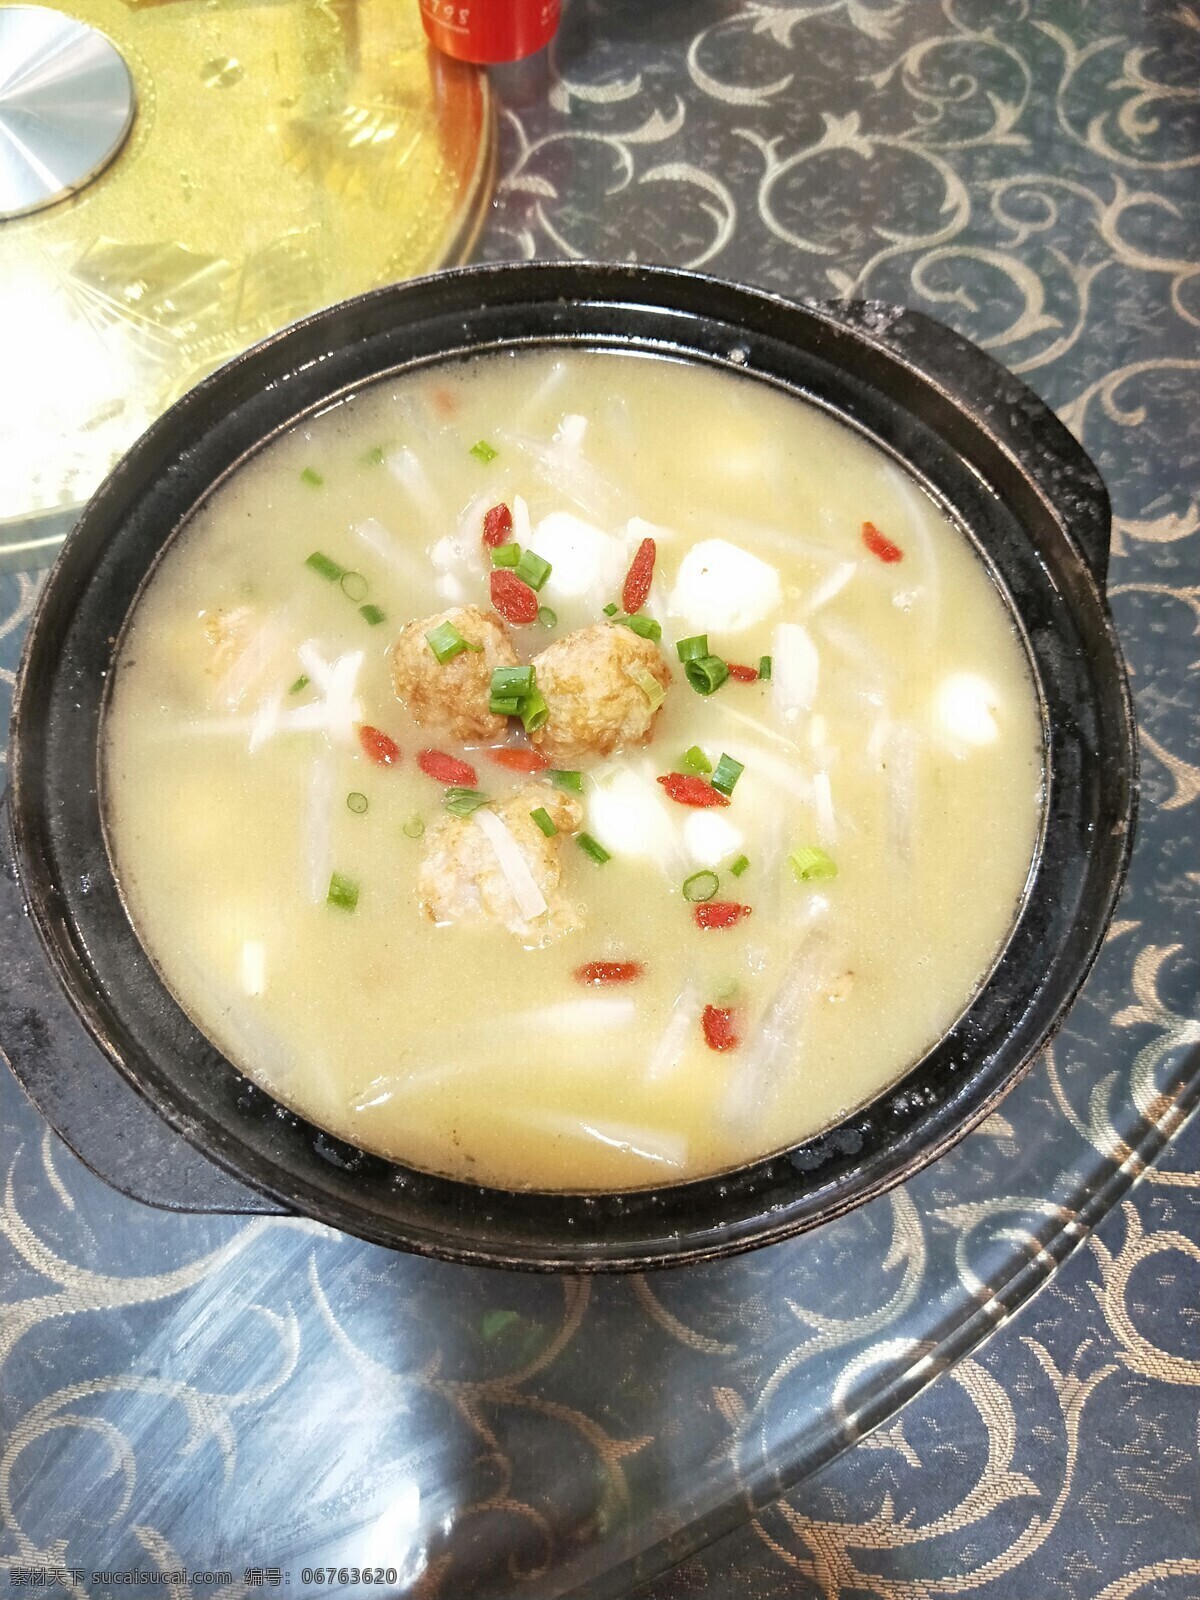 白萝卜 丝 炖肉 丸 丝炖肉丸 汤类 郴州 湘 餐饮美食 传统美食